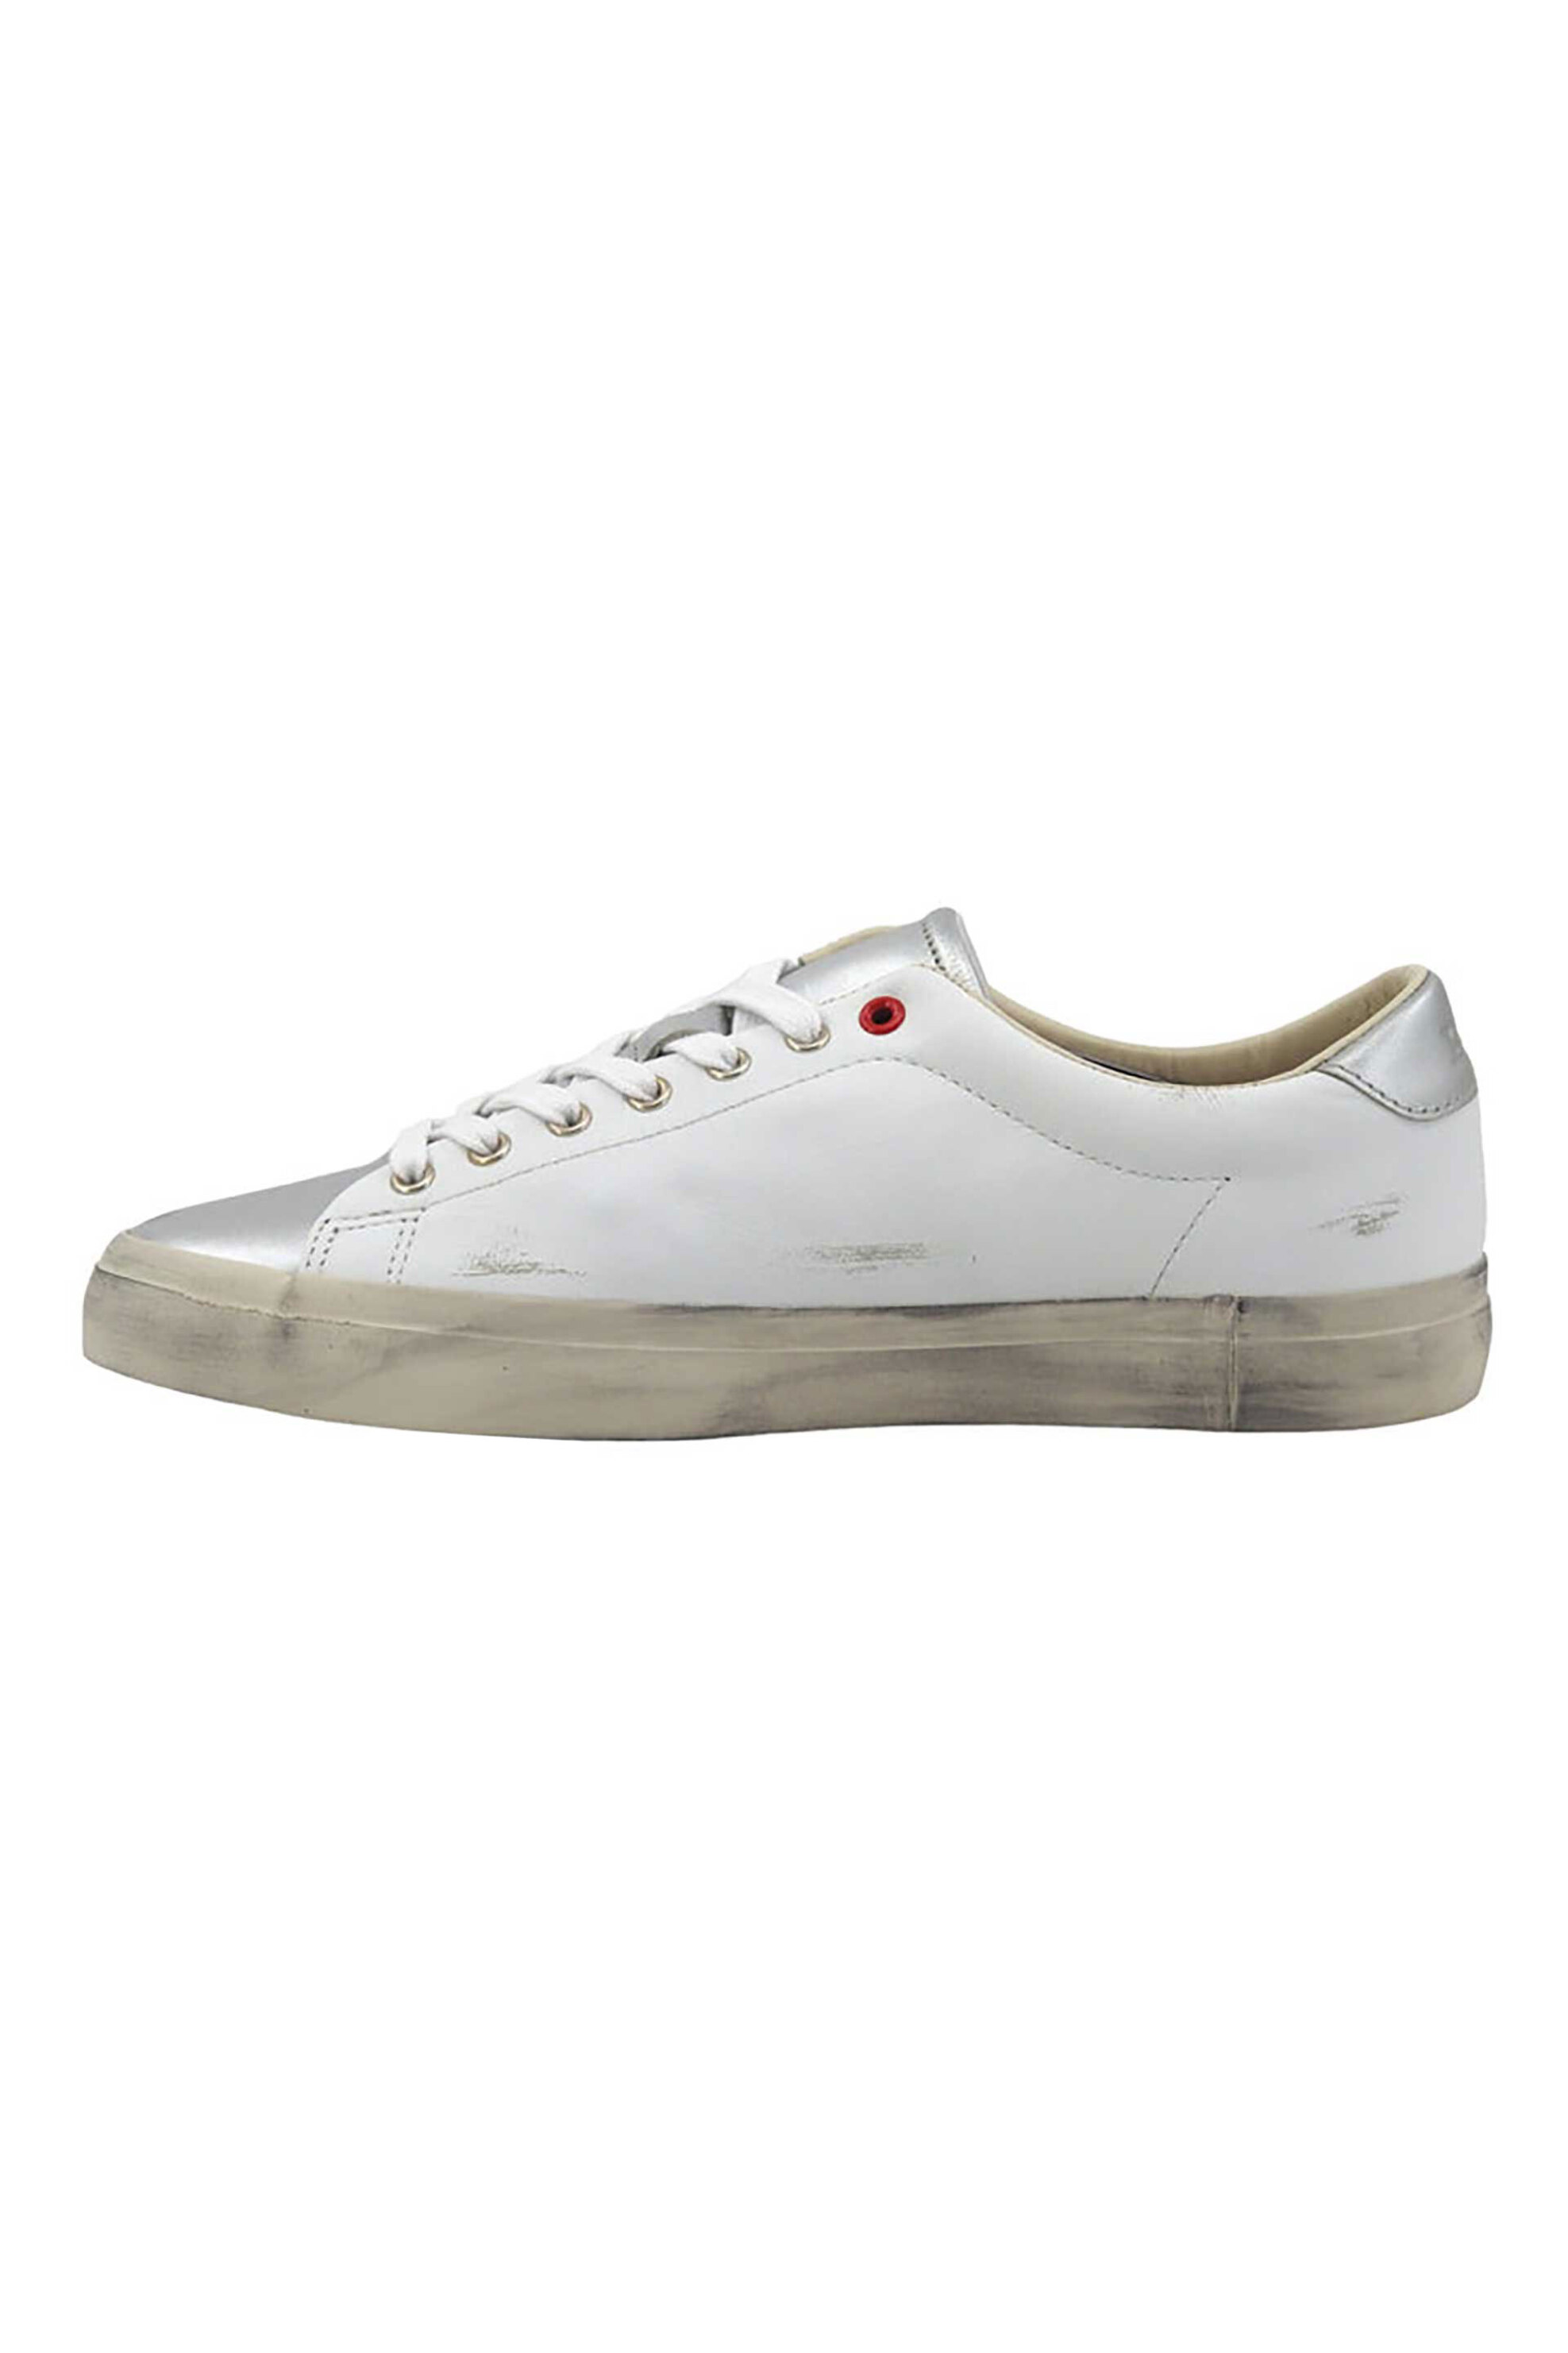 Ανδρική Μόδα > Ανδρικά Παπούτσια > Ανδρικά Sneakers Polo Ralph Lauren ανδρικά δερμάτινα sneakers με φθαρμένη όψη - 816931904001 Λευκό